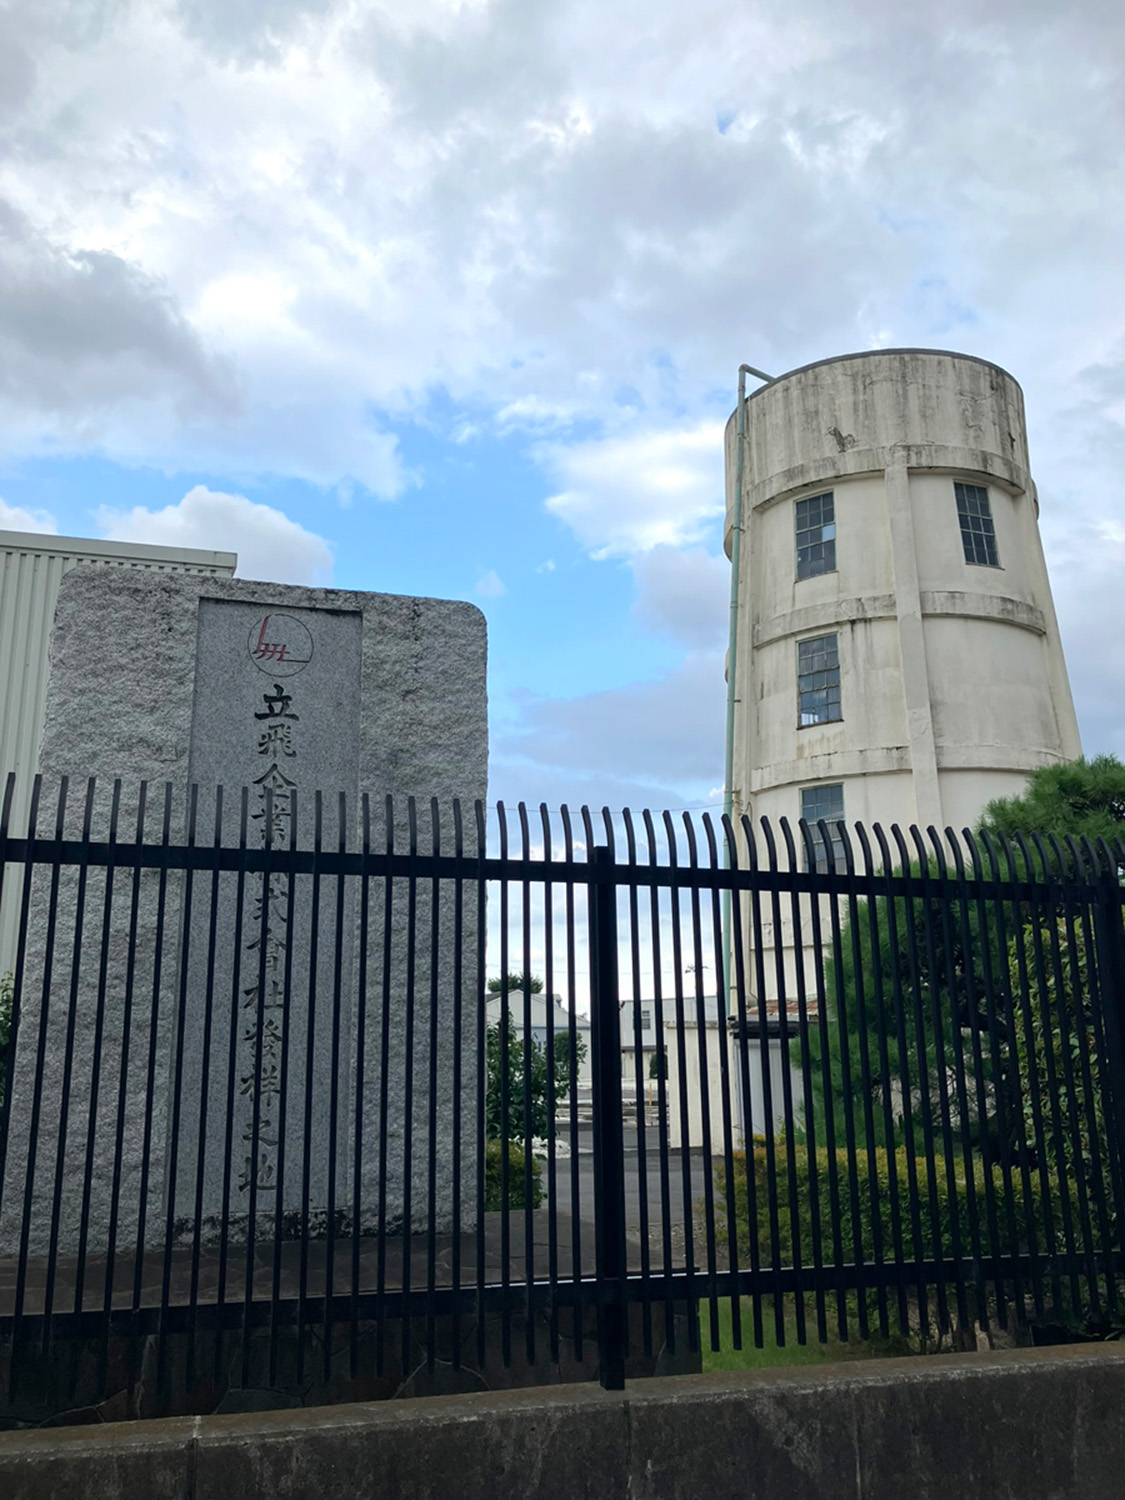 現在は「立飛ホールディングス」敷地内に設置されている記念碑。右に写る給水塔は昭和13（1938）年に建てられたとのことで、歴史を感じさせる。